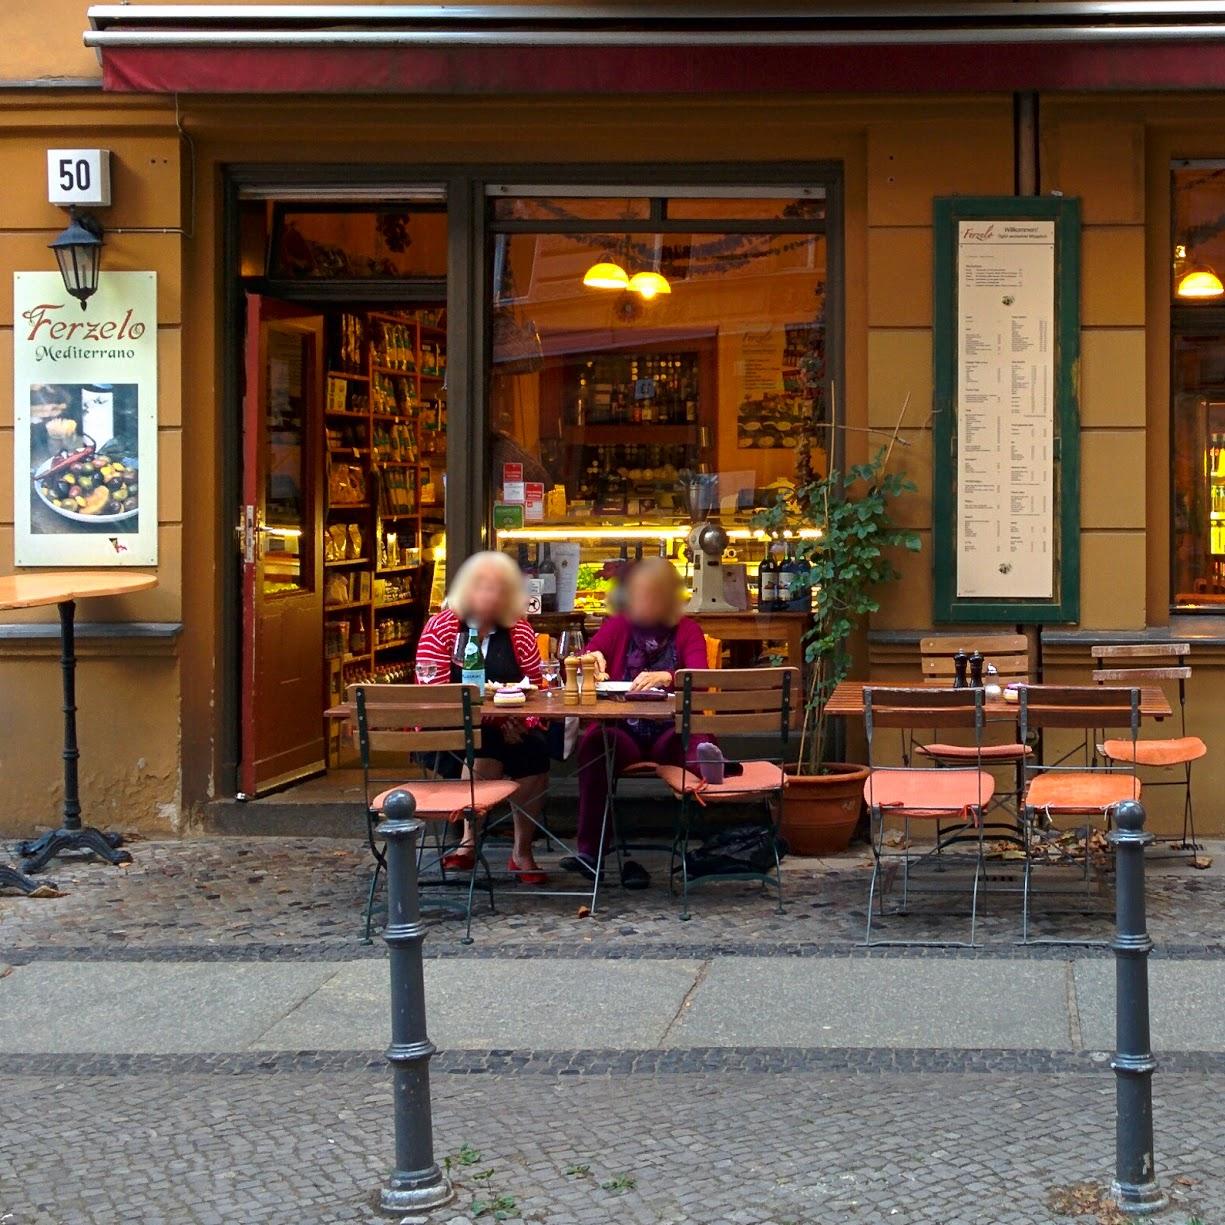 Restaurant "Ferzelo" in Berlin